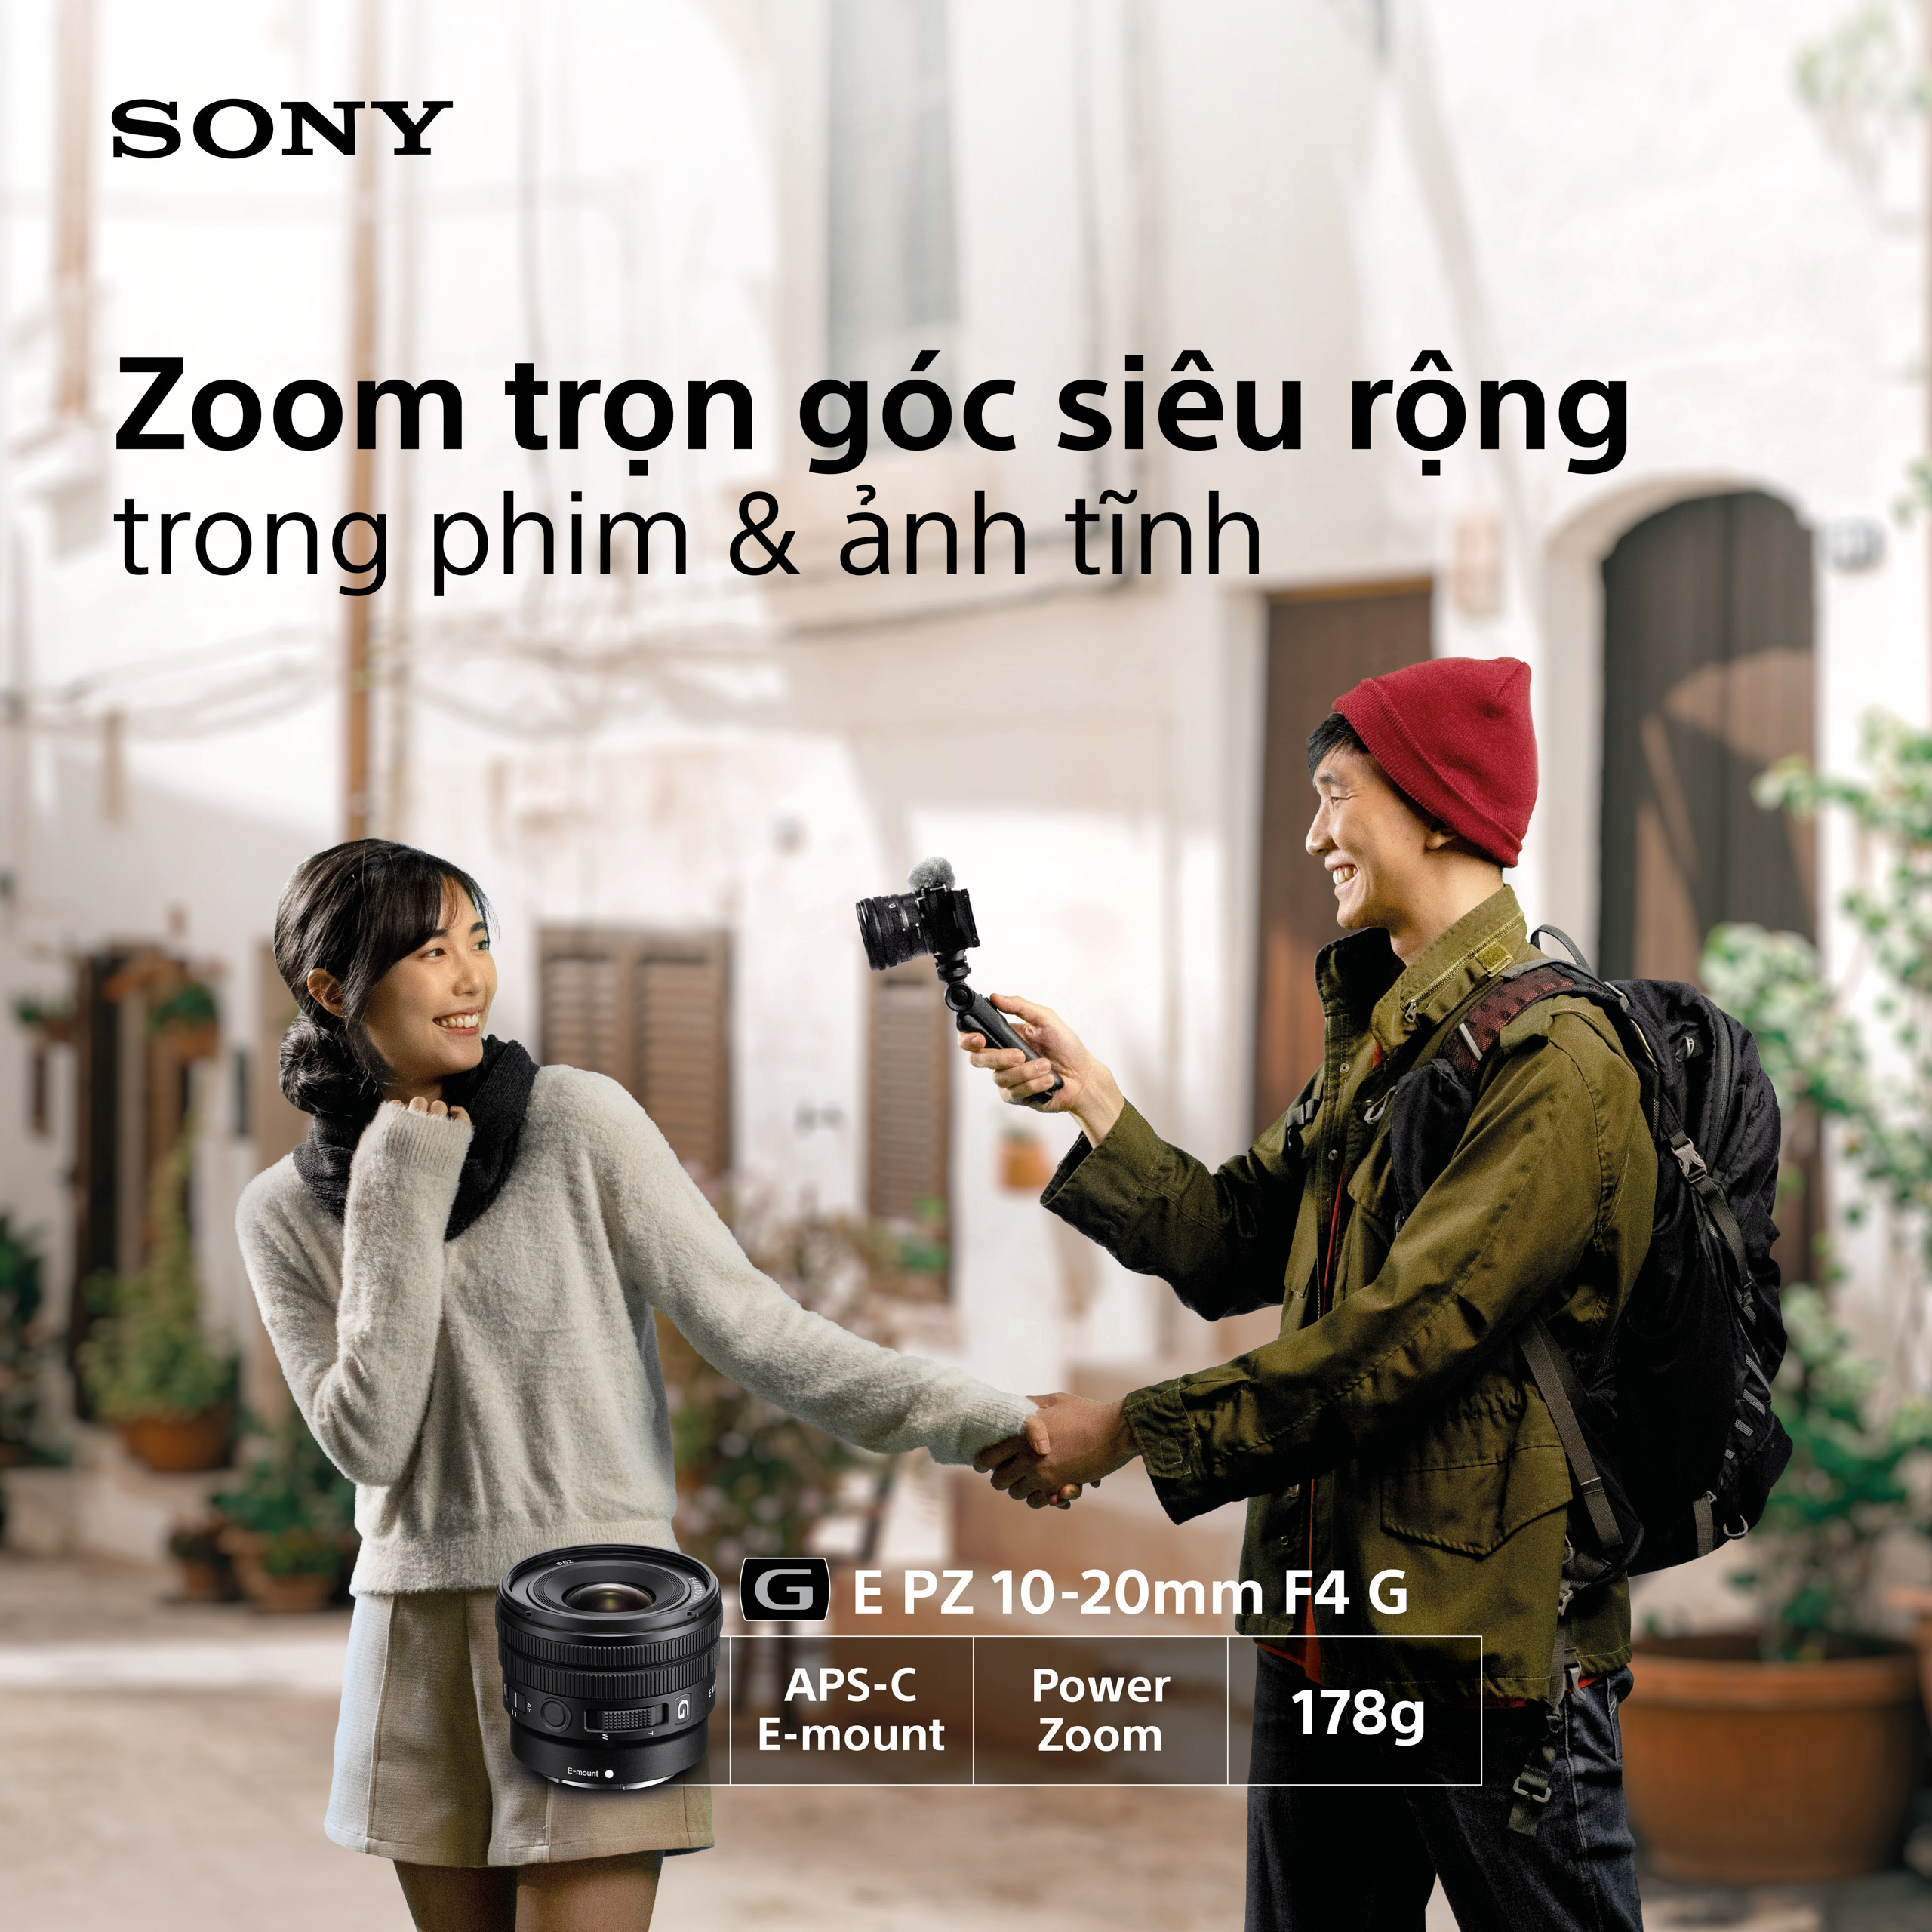 Sony ra mắt bộ ba ống kính góc rộng ngàm E cho máy ảnh APS-C: PZ 10-20mm F4 G, E 15mm F1.4 G và E 11mm F1.8